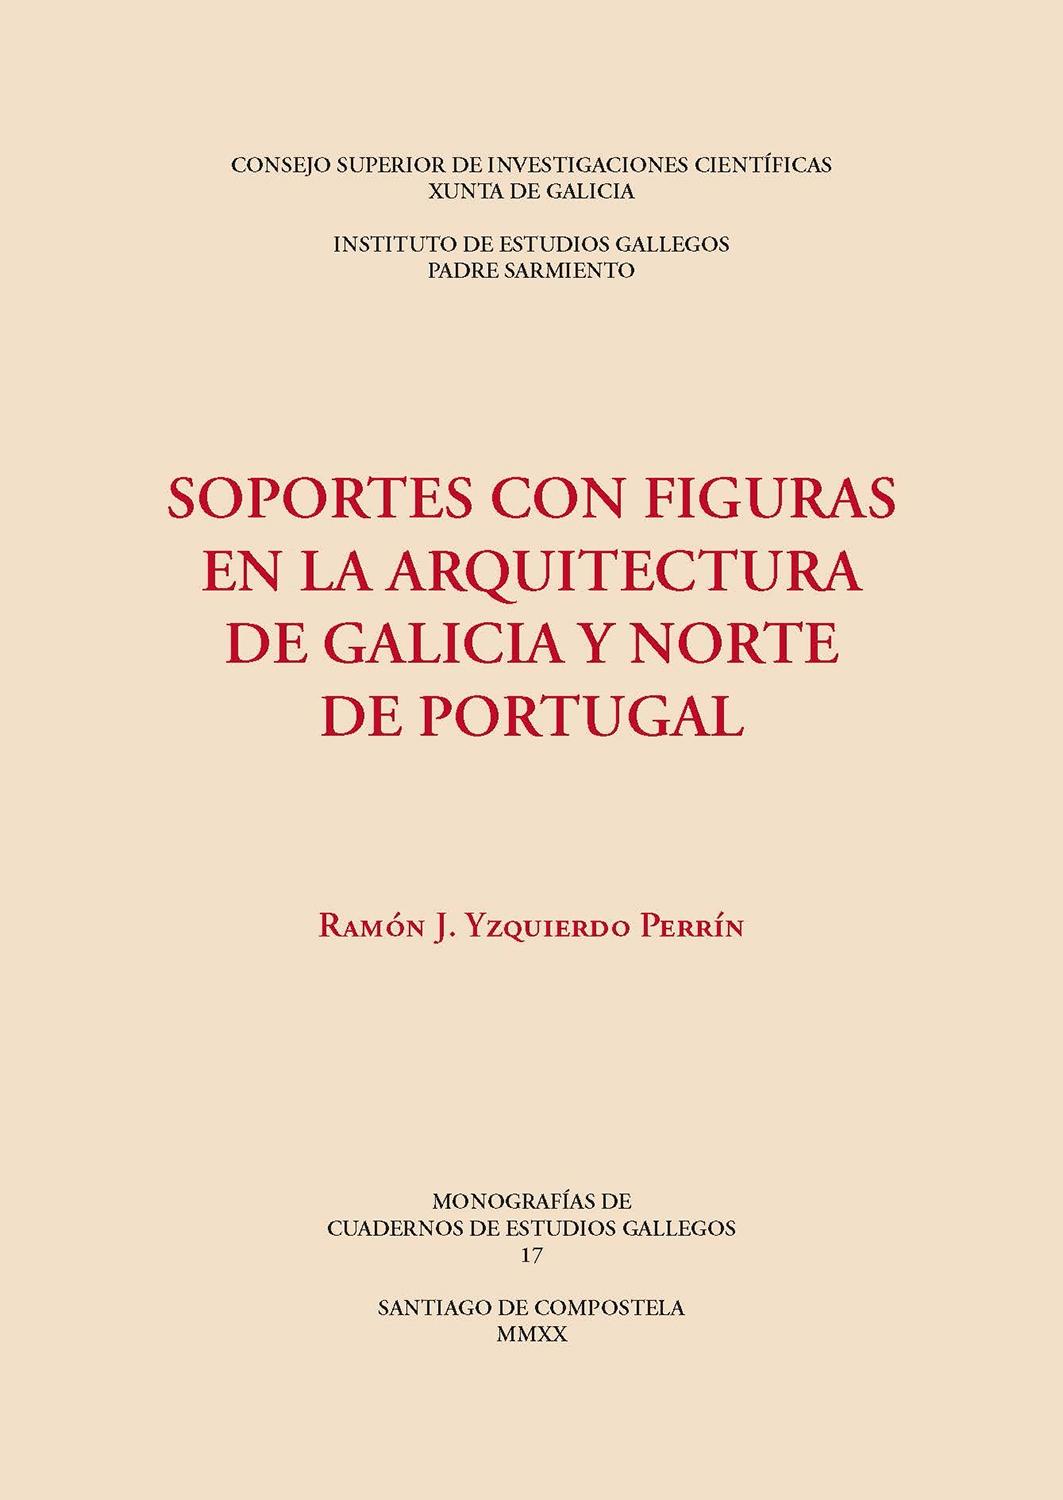 SOPORTES CON FIGURAS EN LA ARQUITECTURA DE GALICIA Y NORTE DE PORTUGAL. 